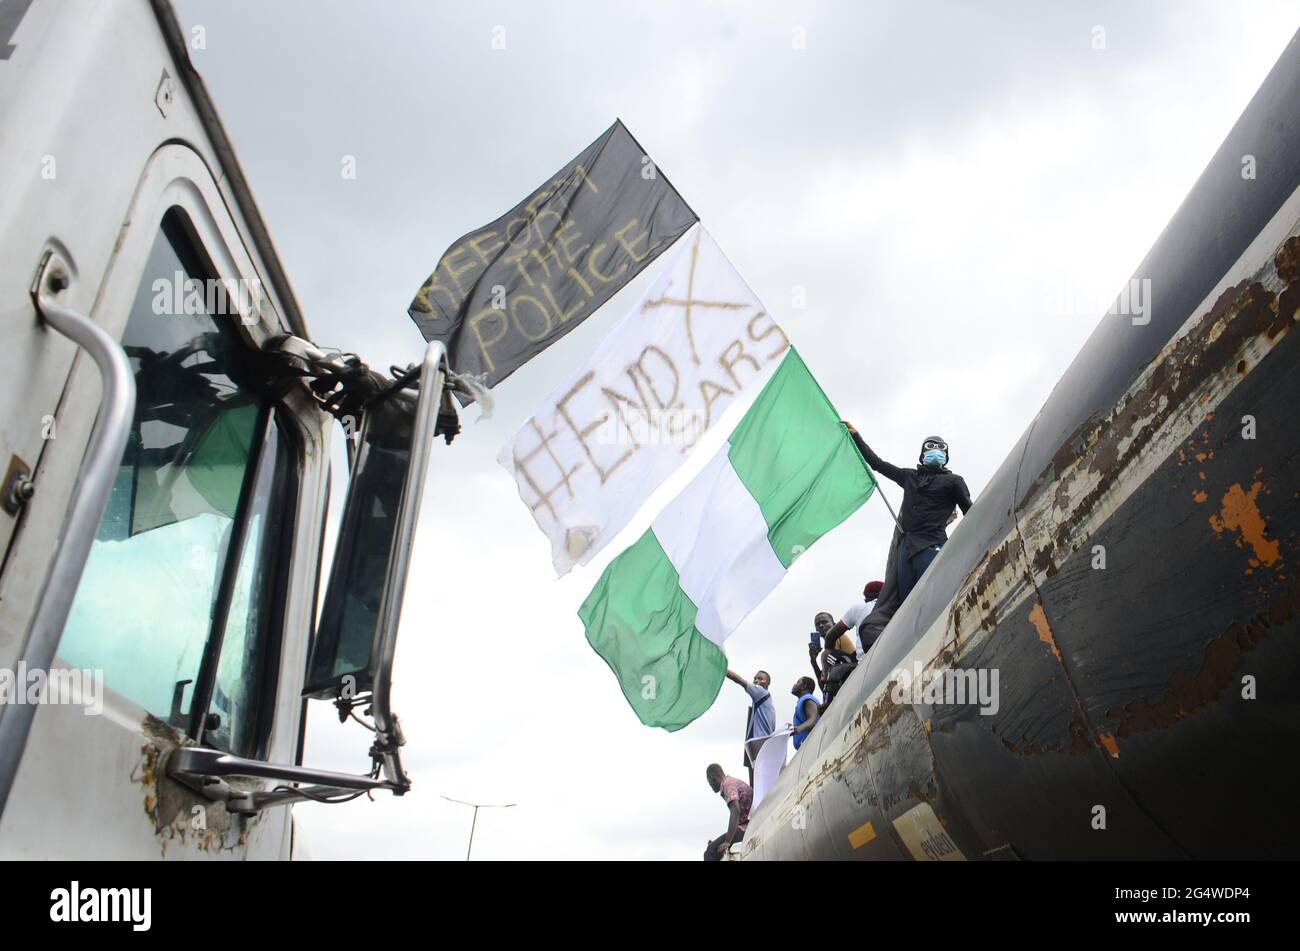 Jóvenes de manifestantes del ENDSARS exhiben la bandera nigeriana y un cartel en una multitud en apoyo de la protesta en curso contra el acoso, los asesinatos y la brutalidad de la Unidad de la Fuerza de Policía de Nigeria llamada Escuadrón Especial Antirobo (SARS) en la Cámara de la Asamblea del Estado de Lagos. Lagos, Nigeria. Foto de stock